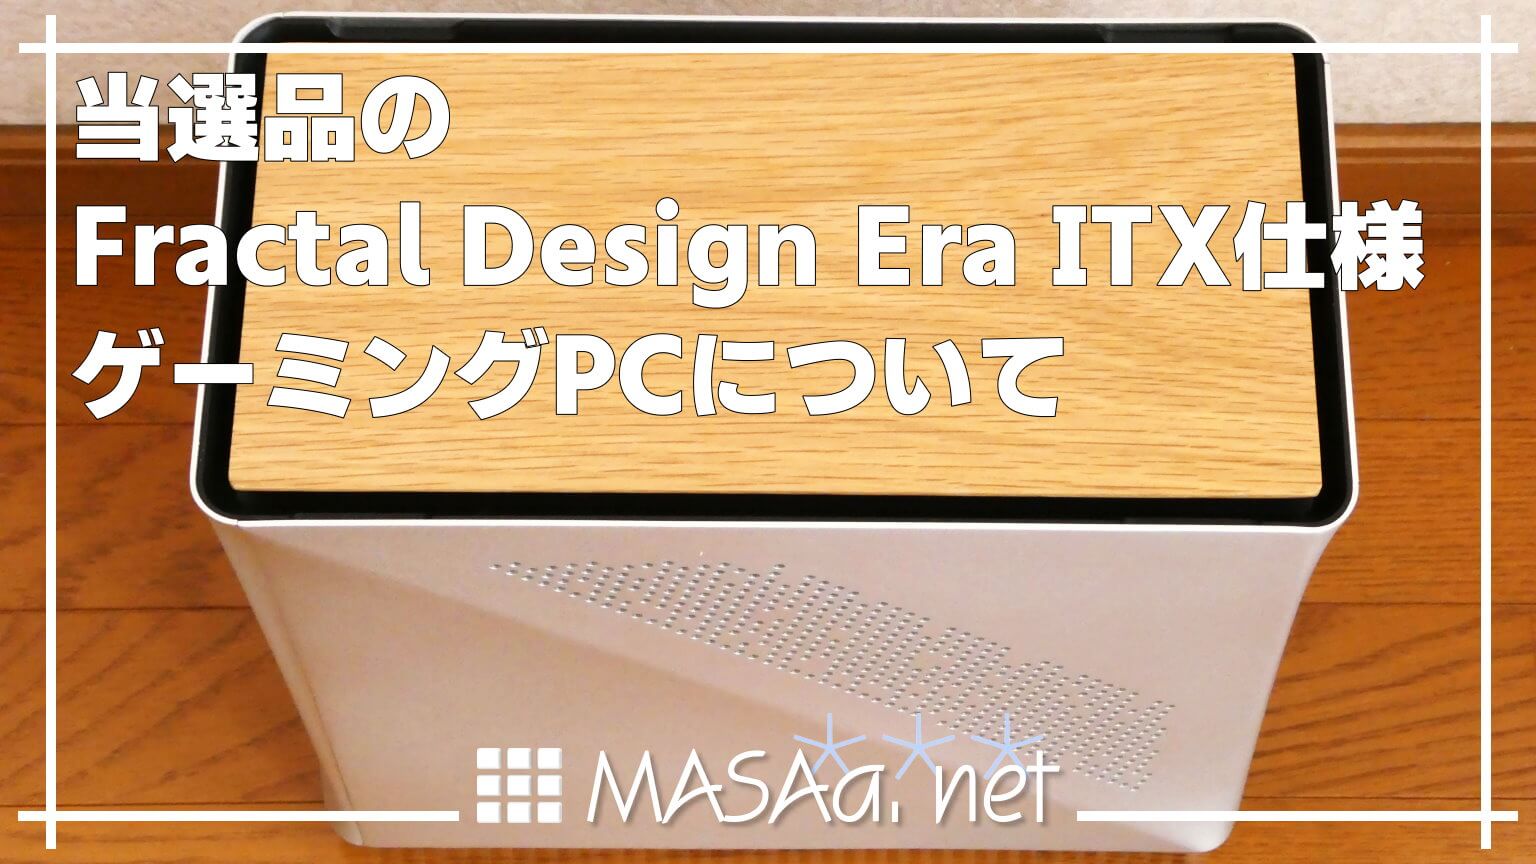 当選品のFractal Design Era ITX仕様ゲーミングPCについて